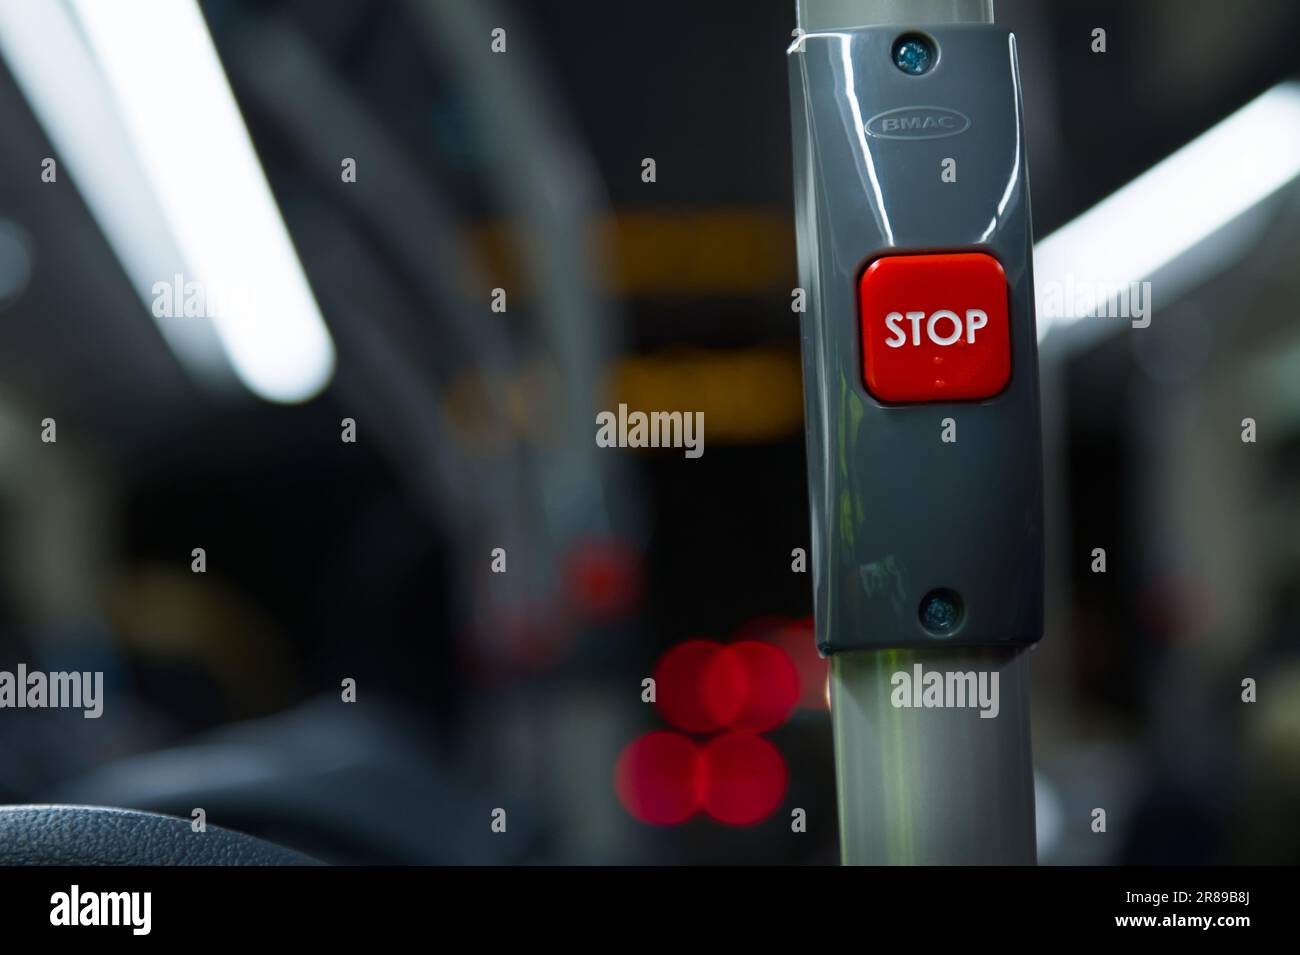 Rote Stopp-Taste in Einem Bus bei Nacht, England, Großbritannien Stockfoto